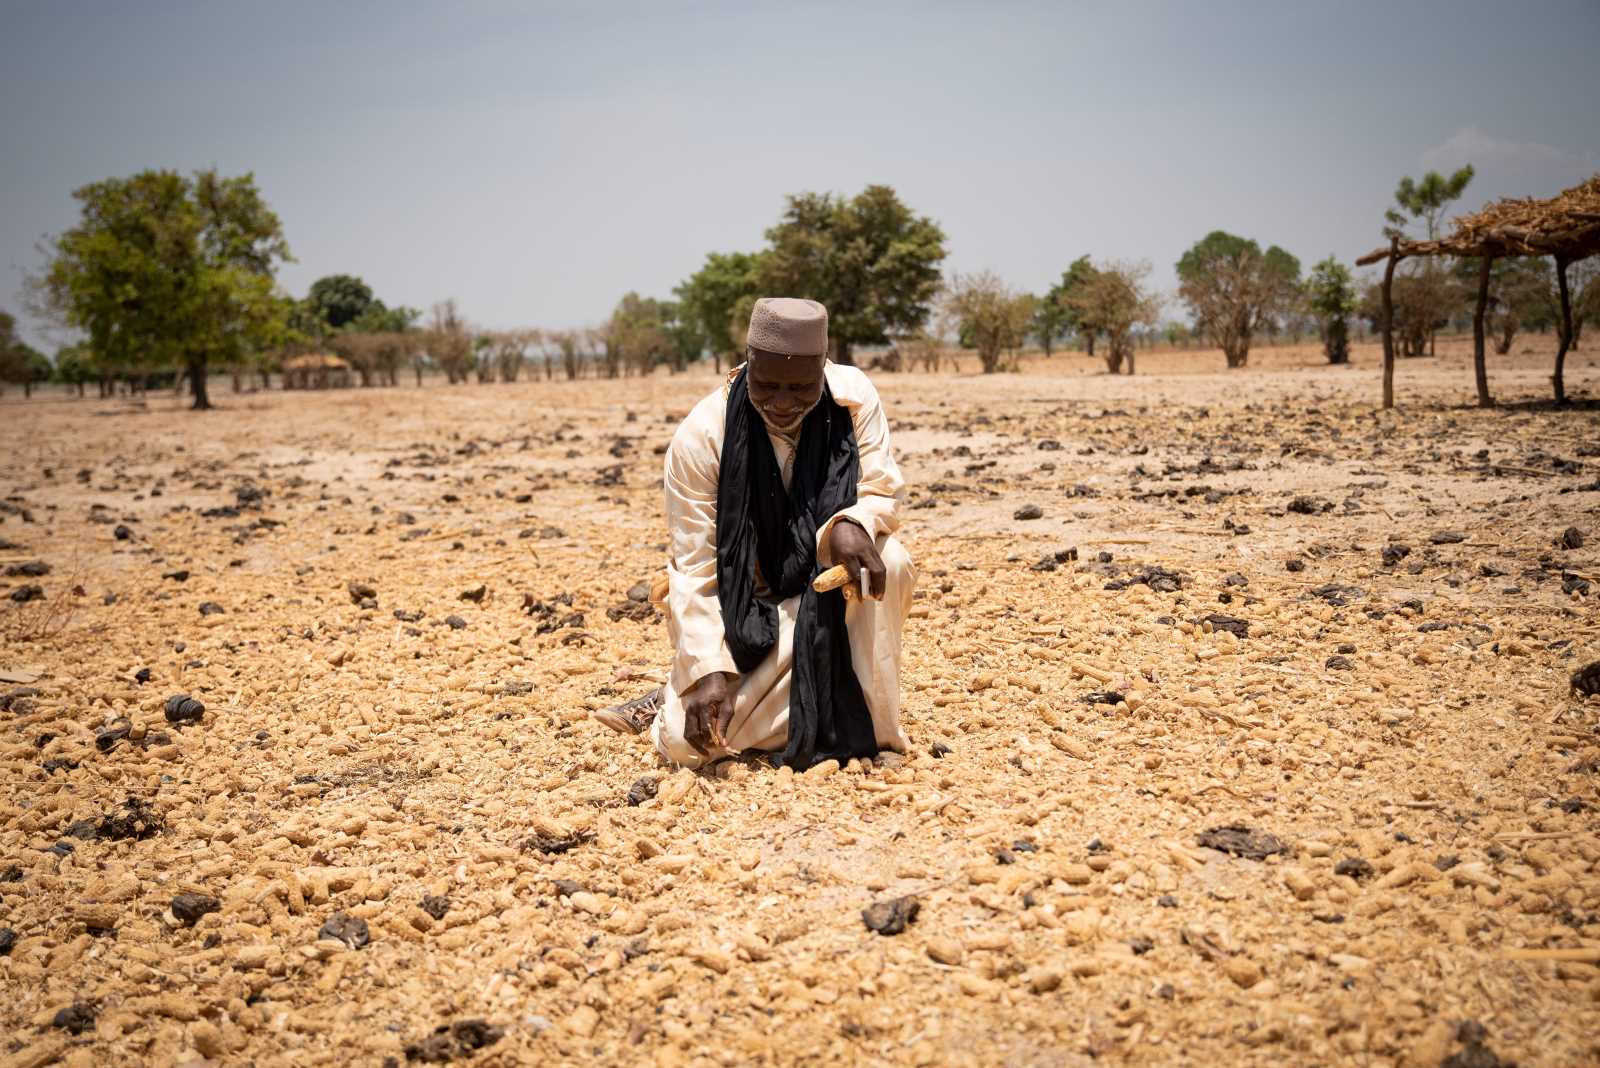 Farmer hit by drought in Mali.